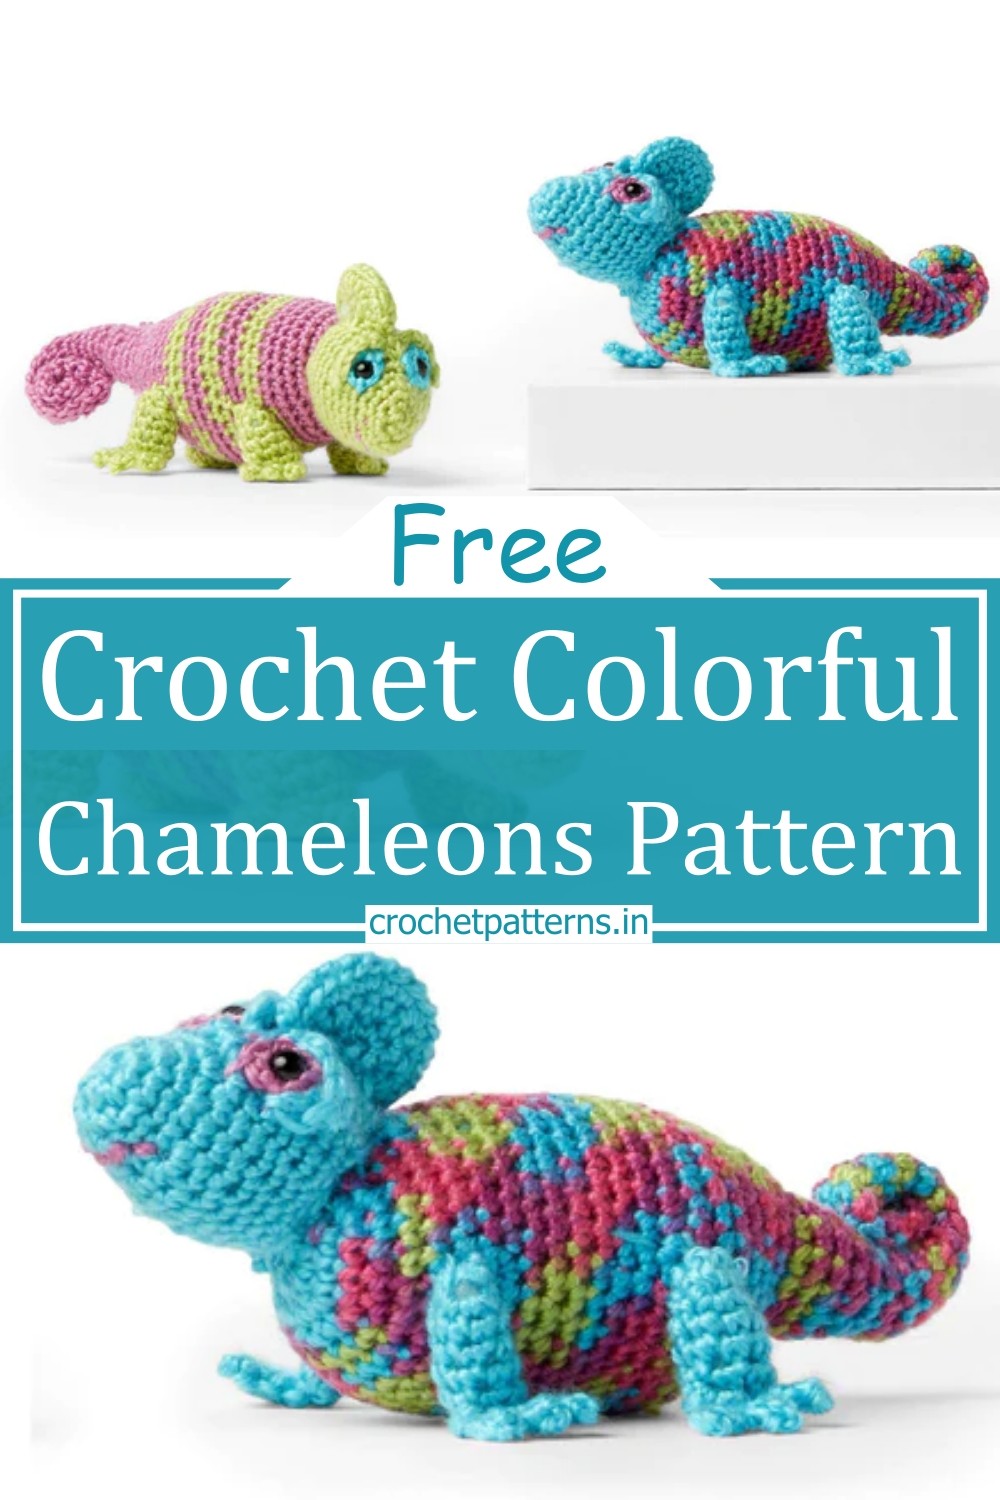 Crochet Colorful Chameleons Pattern